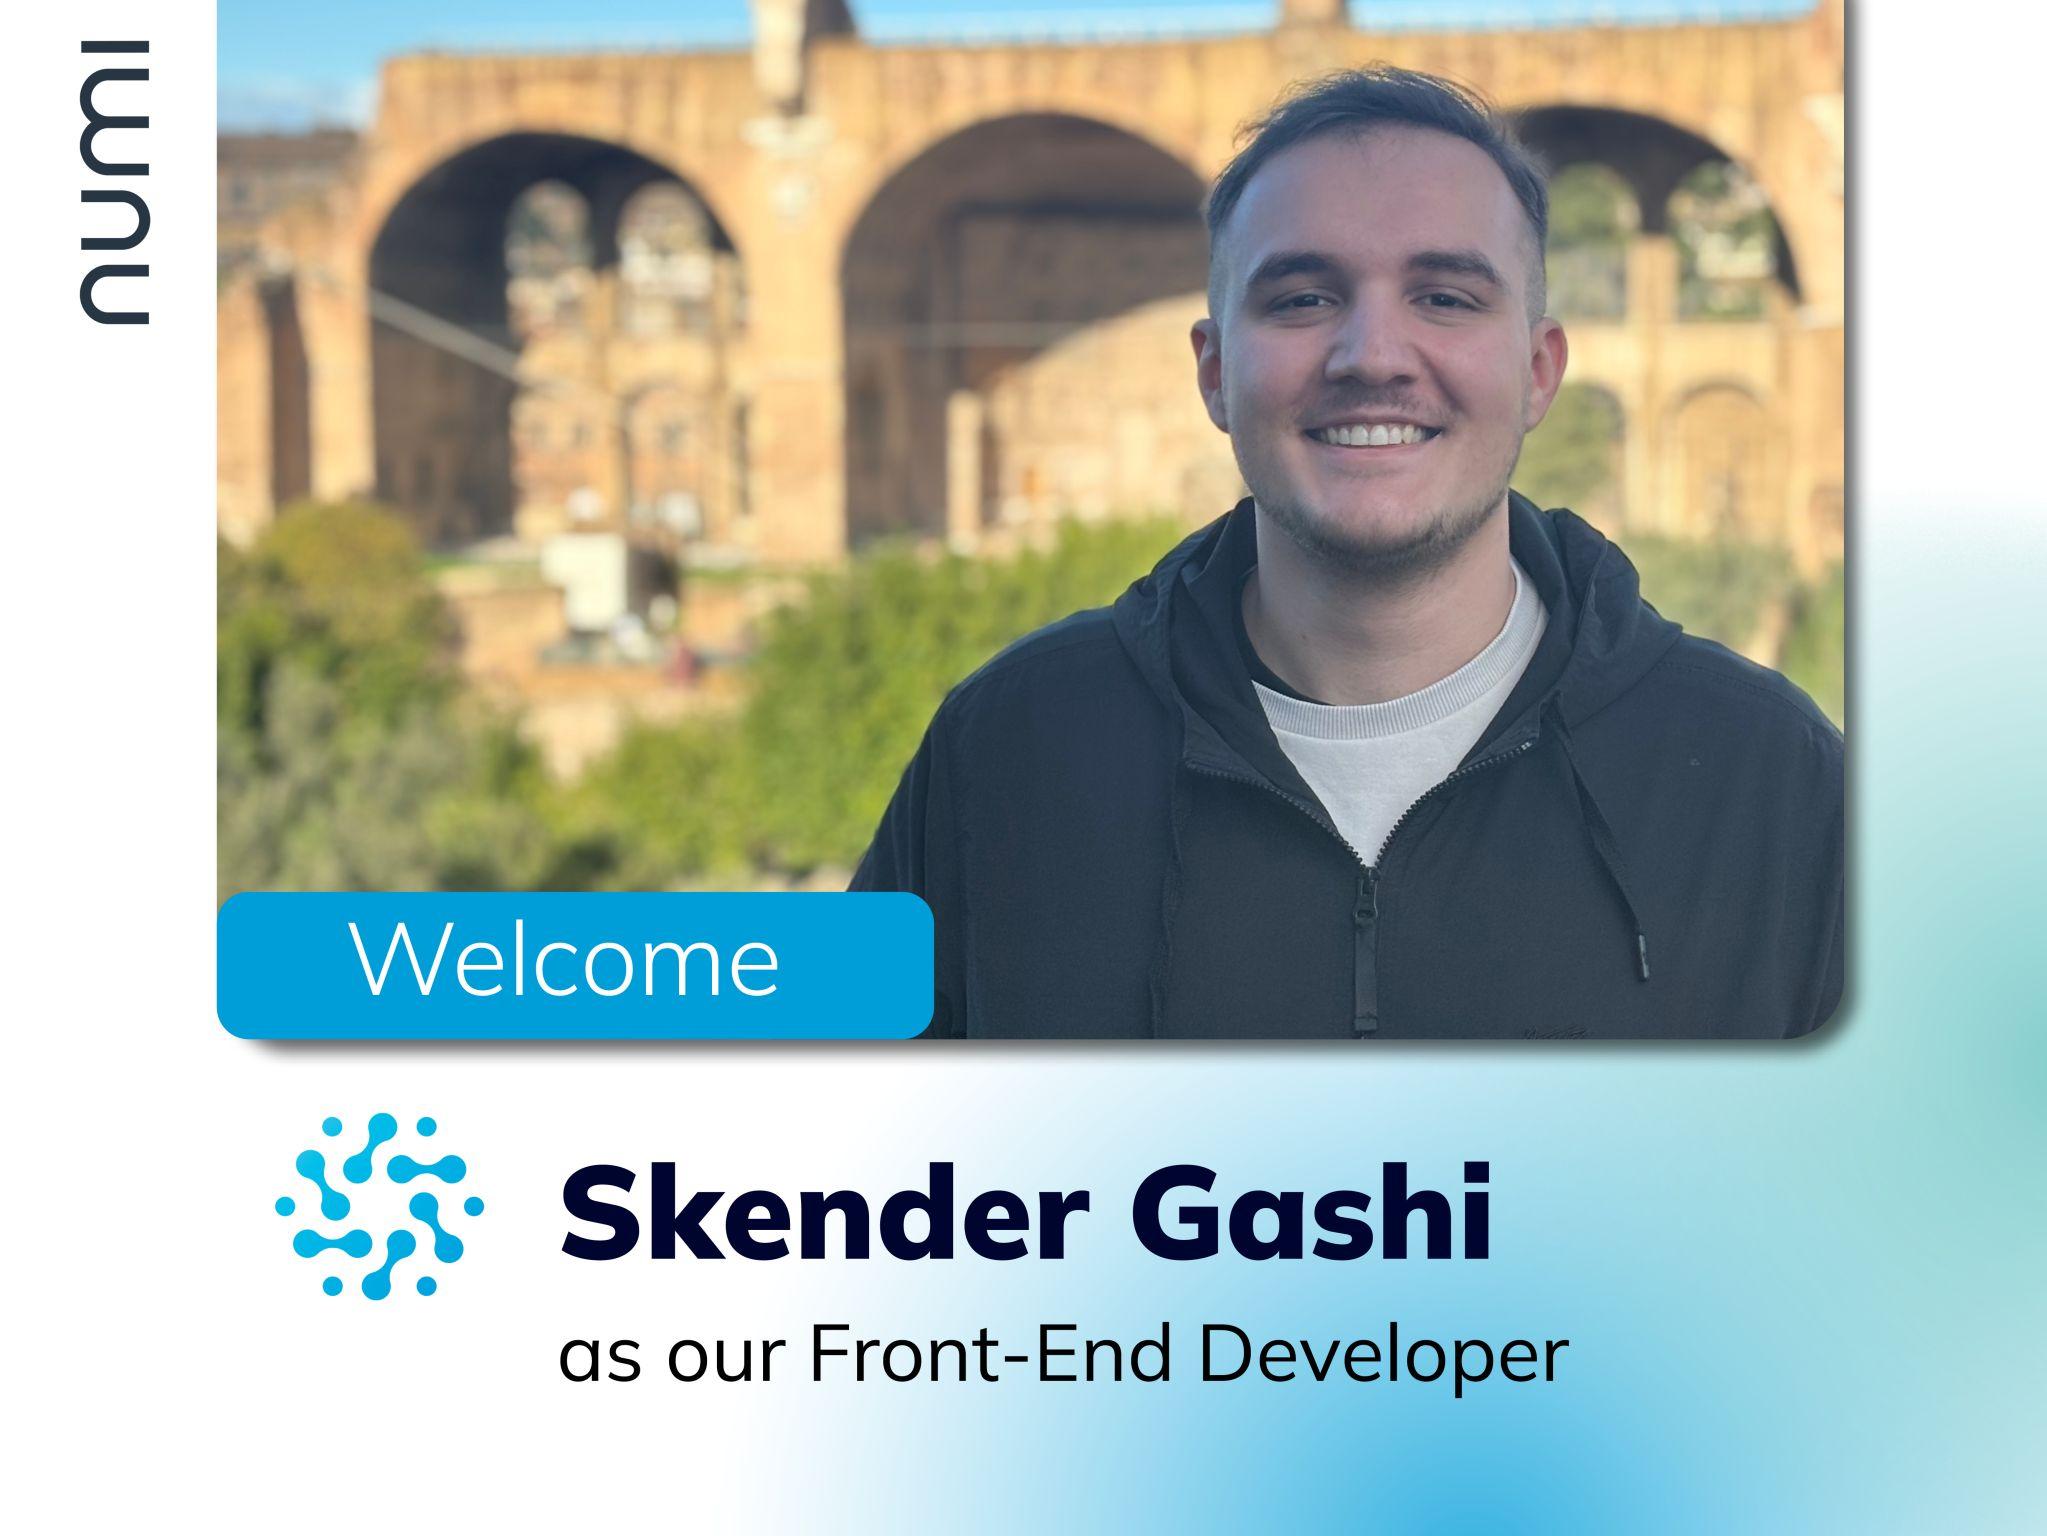 Meet Skender Gashi, our new Front End Developer